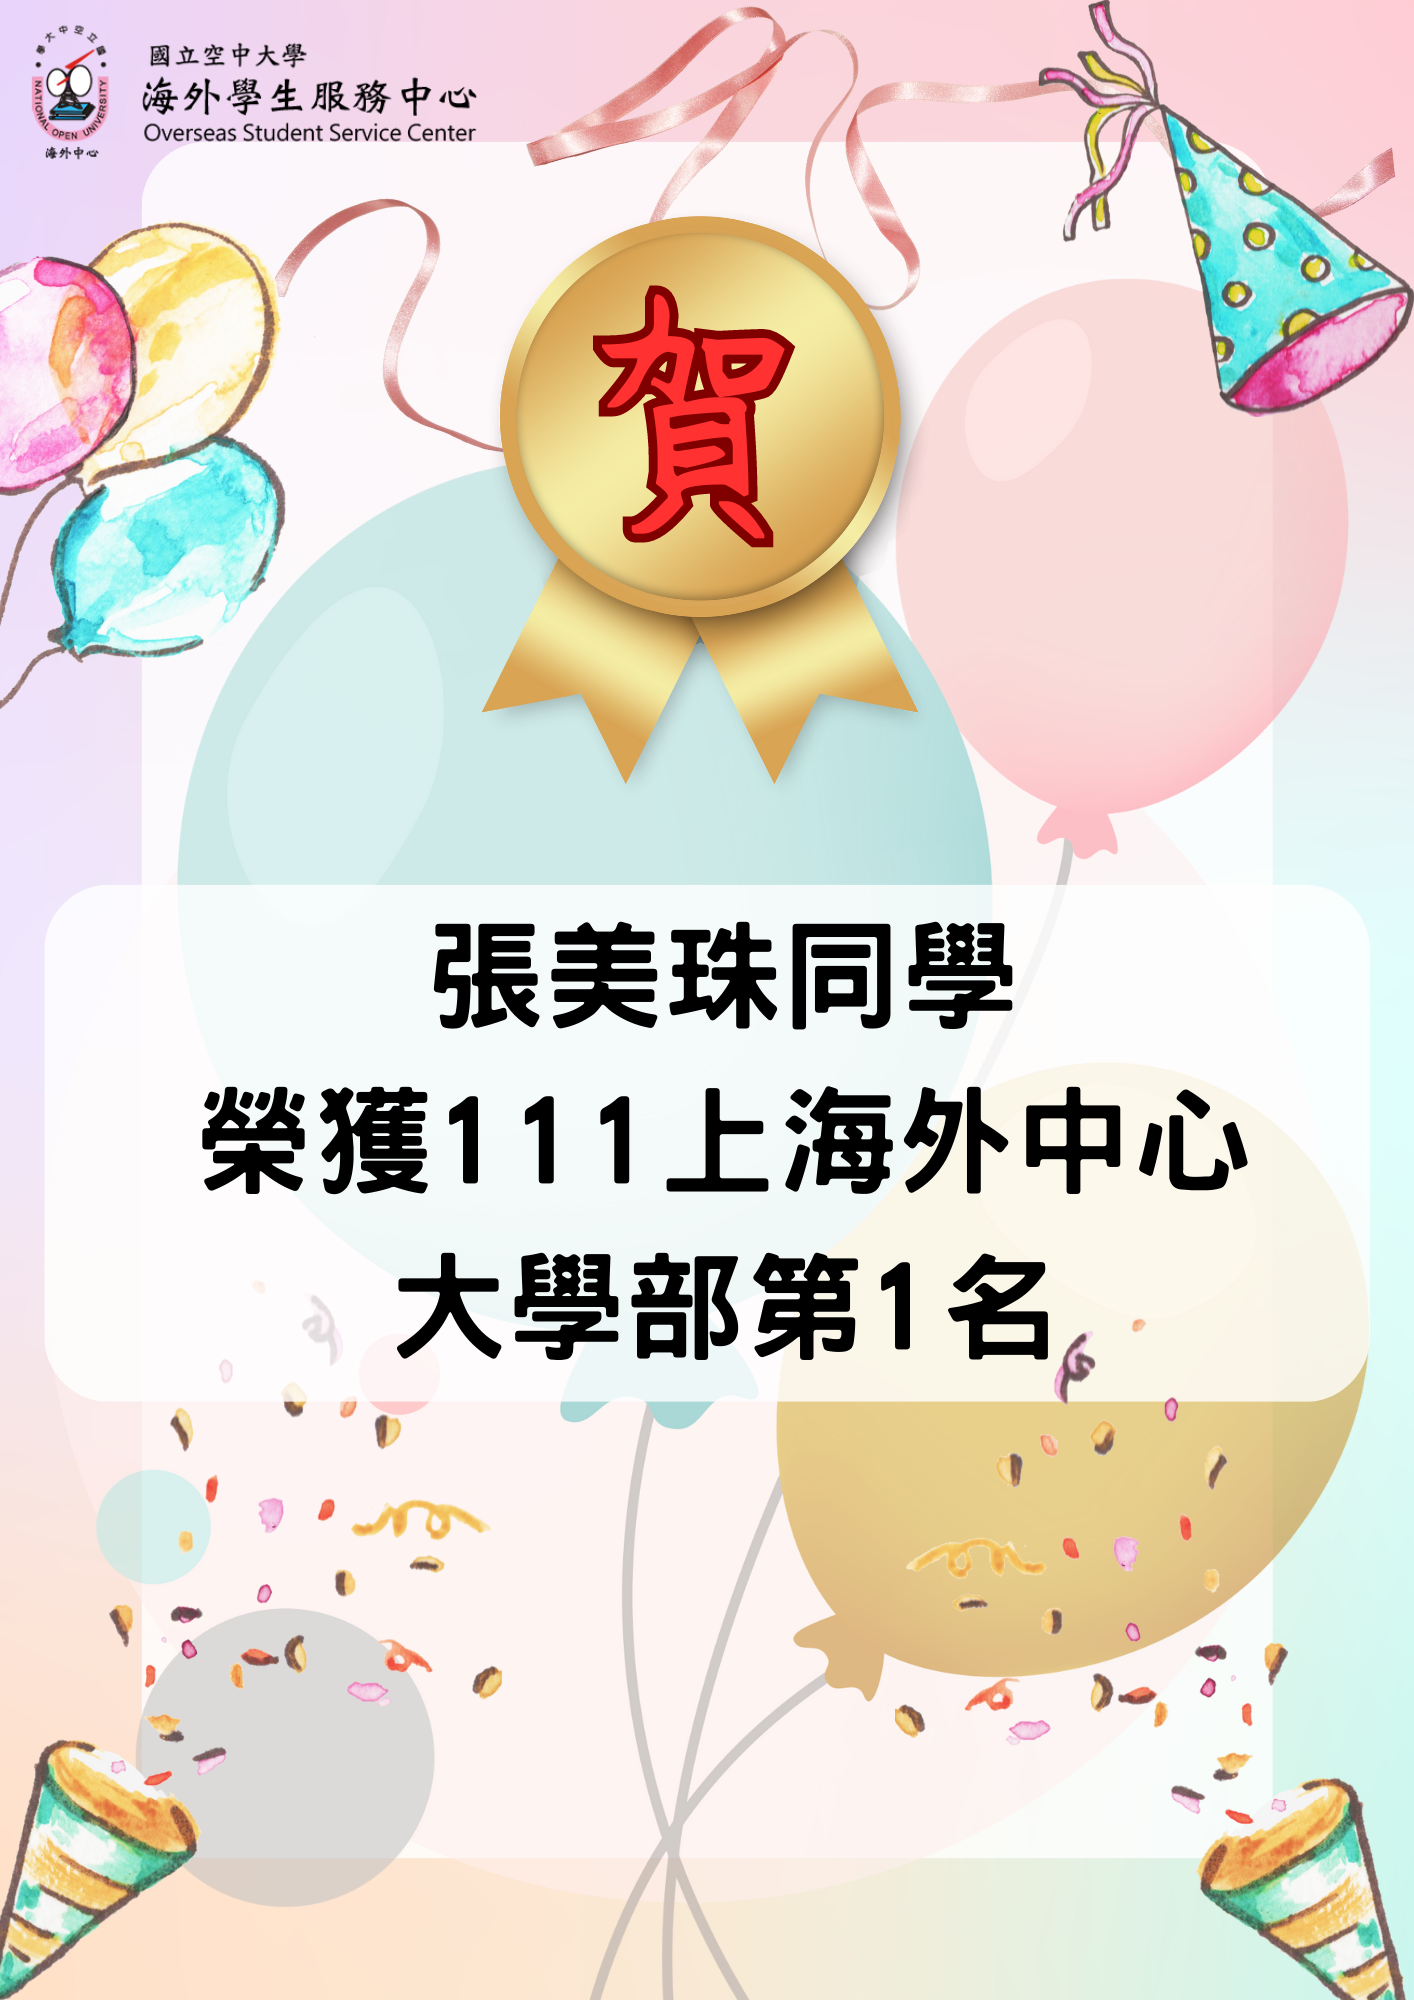 張美珠同學 榮獲111上海外中心 大學部第1名